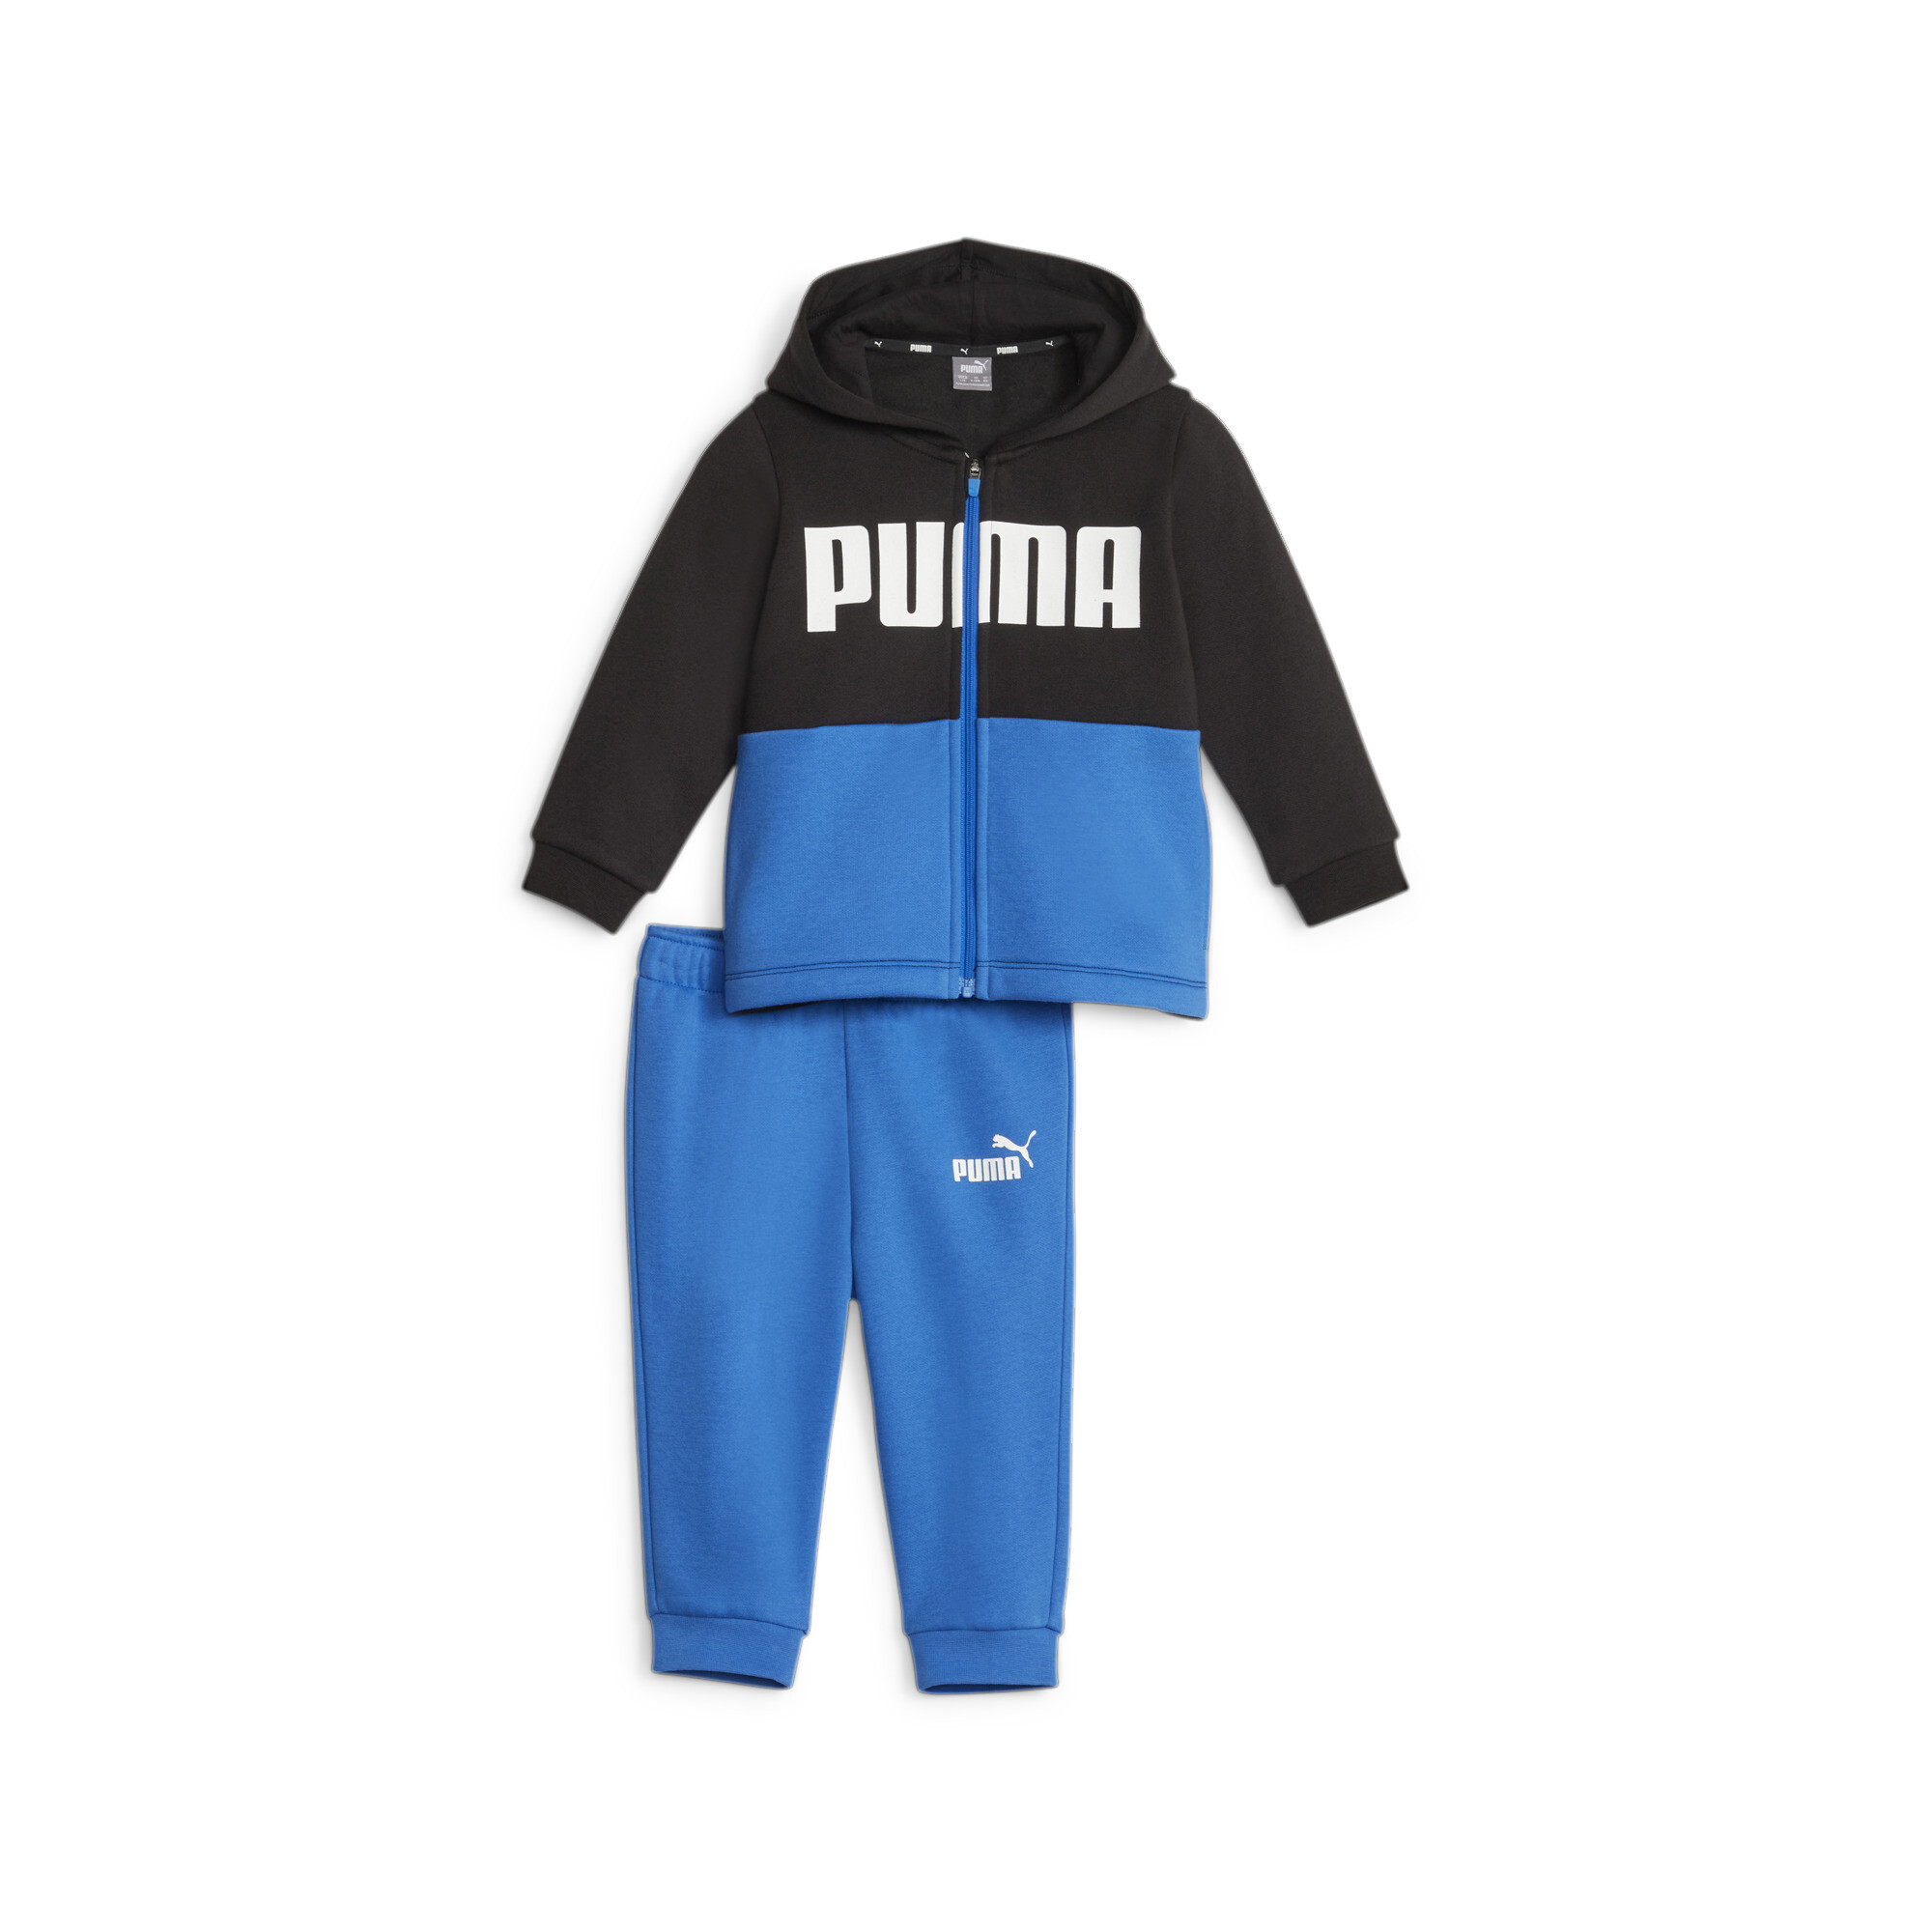 PUMA Minicats Colourblock Jogger Suit Babies In Blue, Size 9-12 Months